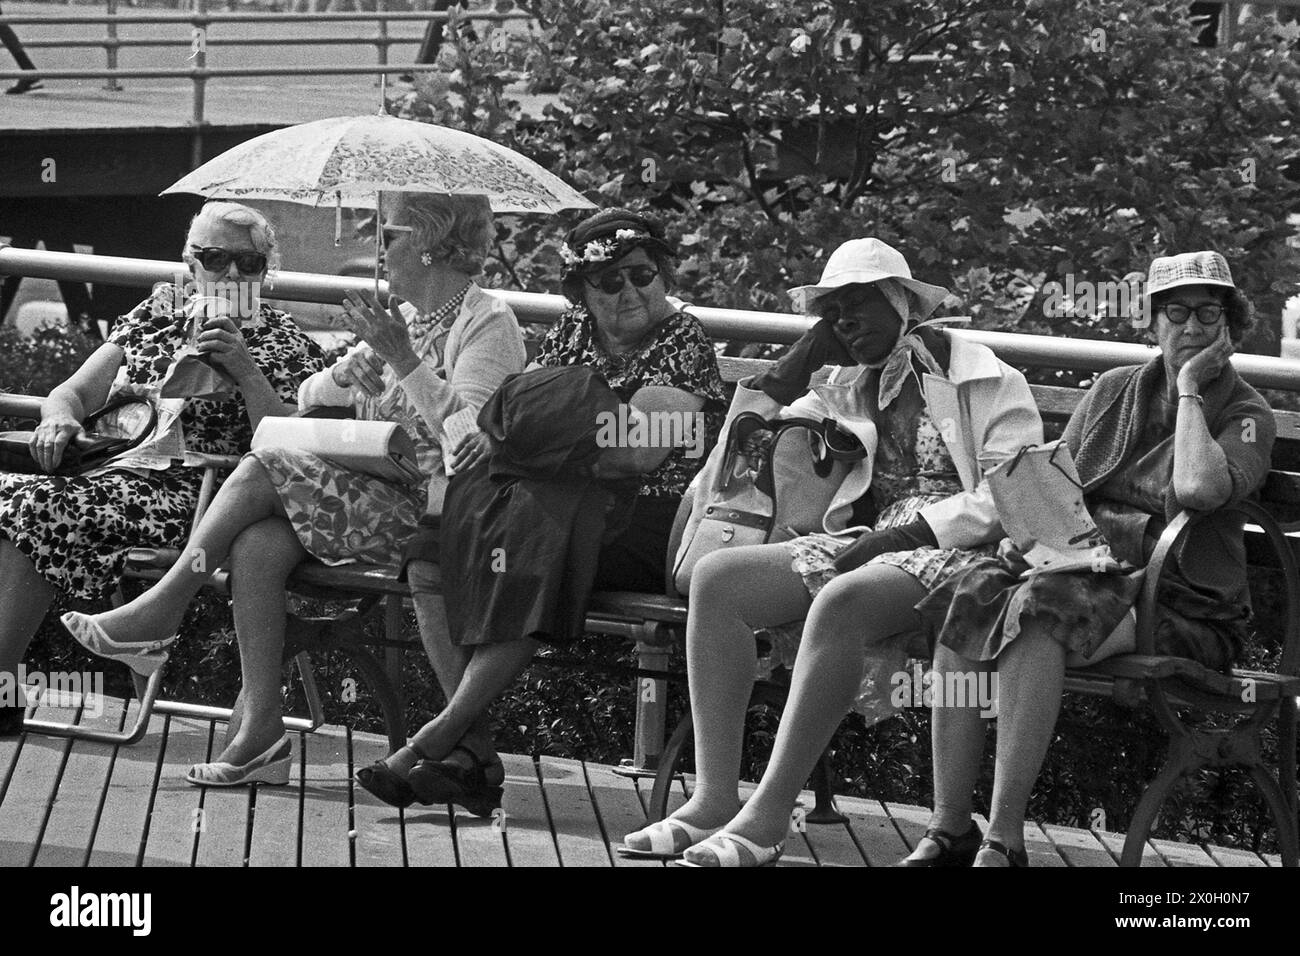 Cinque donne anziane siedono su un banco di lavoro a New York e uno di loro stessa protegge dal calore con un ombrellone. Foto Stock